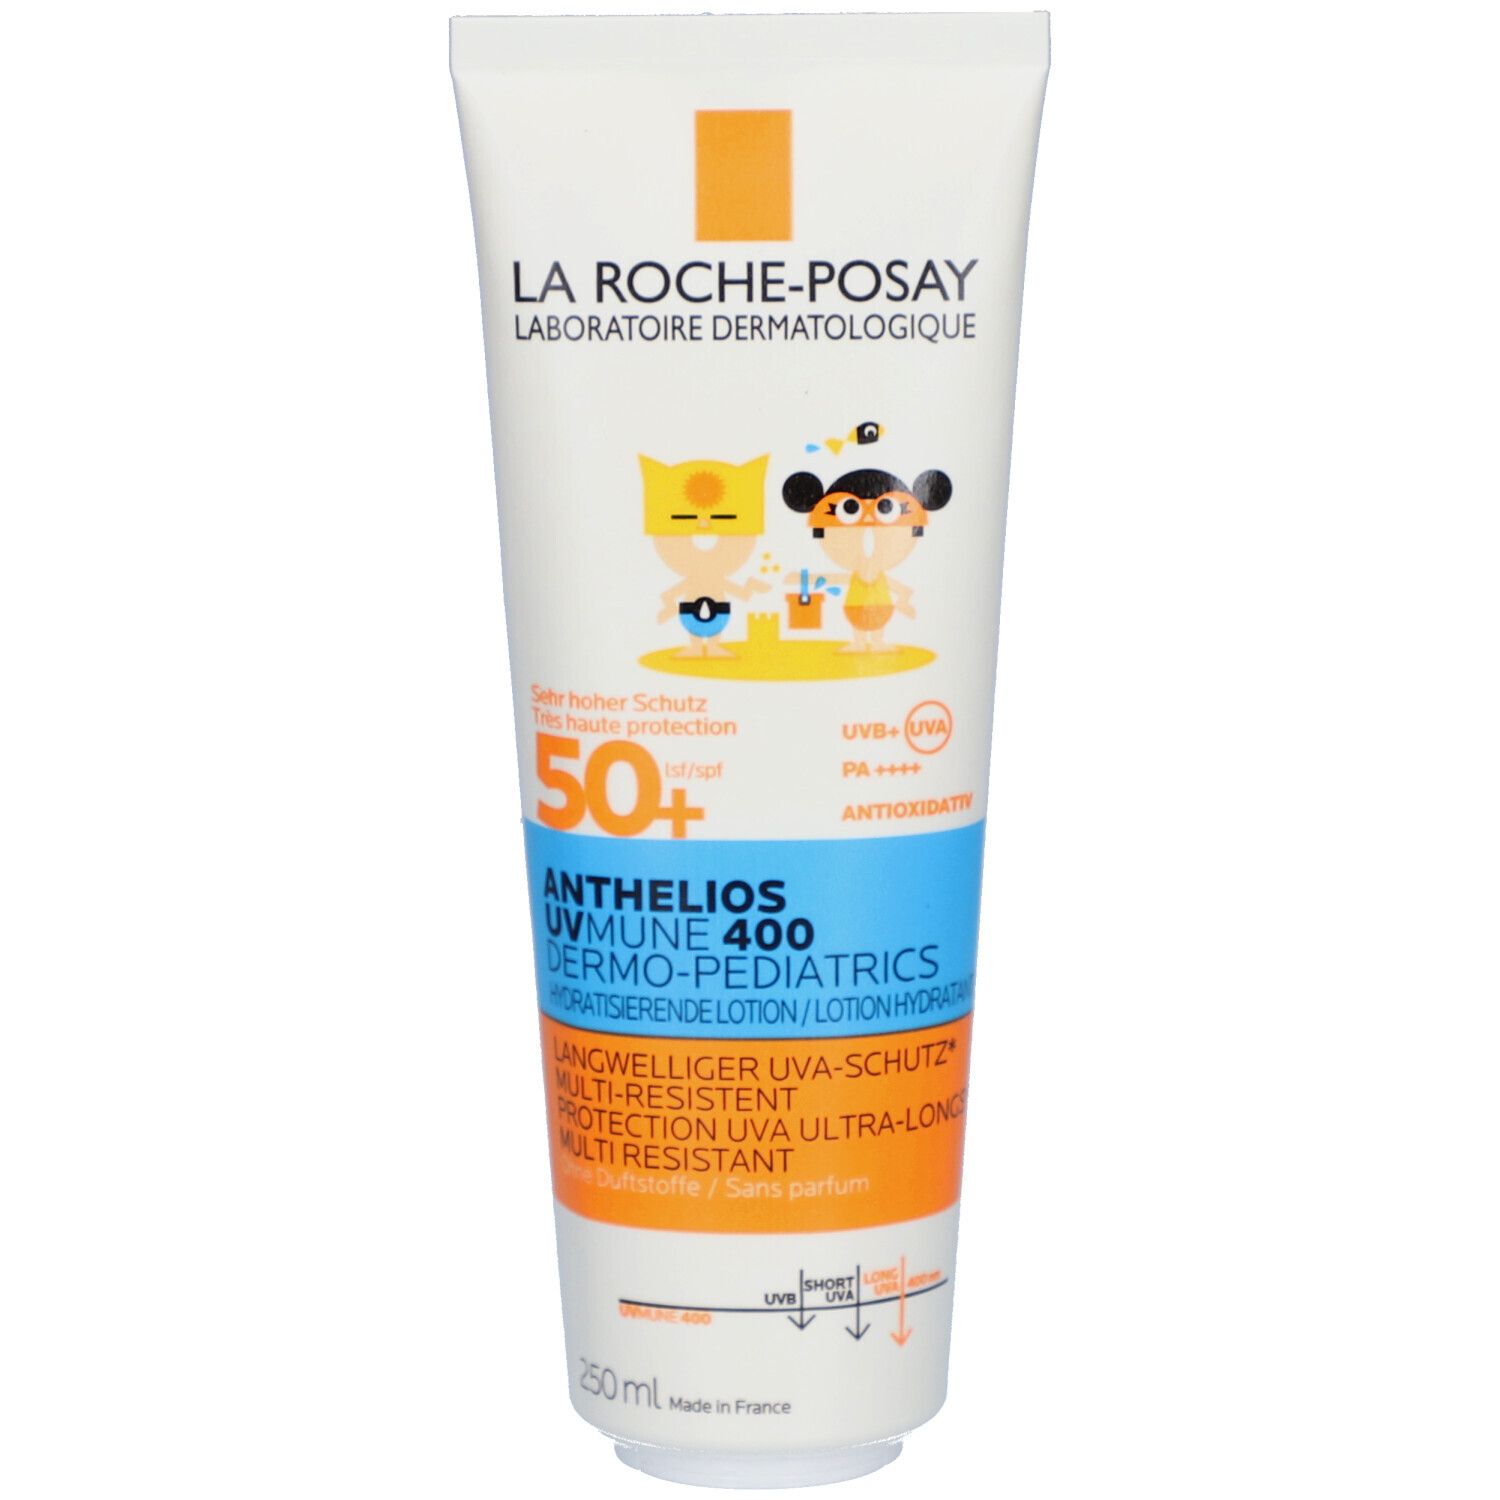 La Roche Posay Anthelios Sonnenmilch für Kinder LSF 50+: Effektiver Sonnenschutz mit Mexoryl 400 Filtertechnologie und A